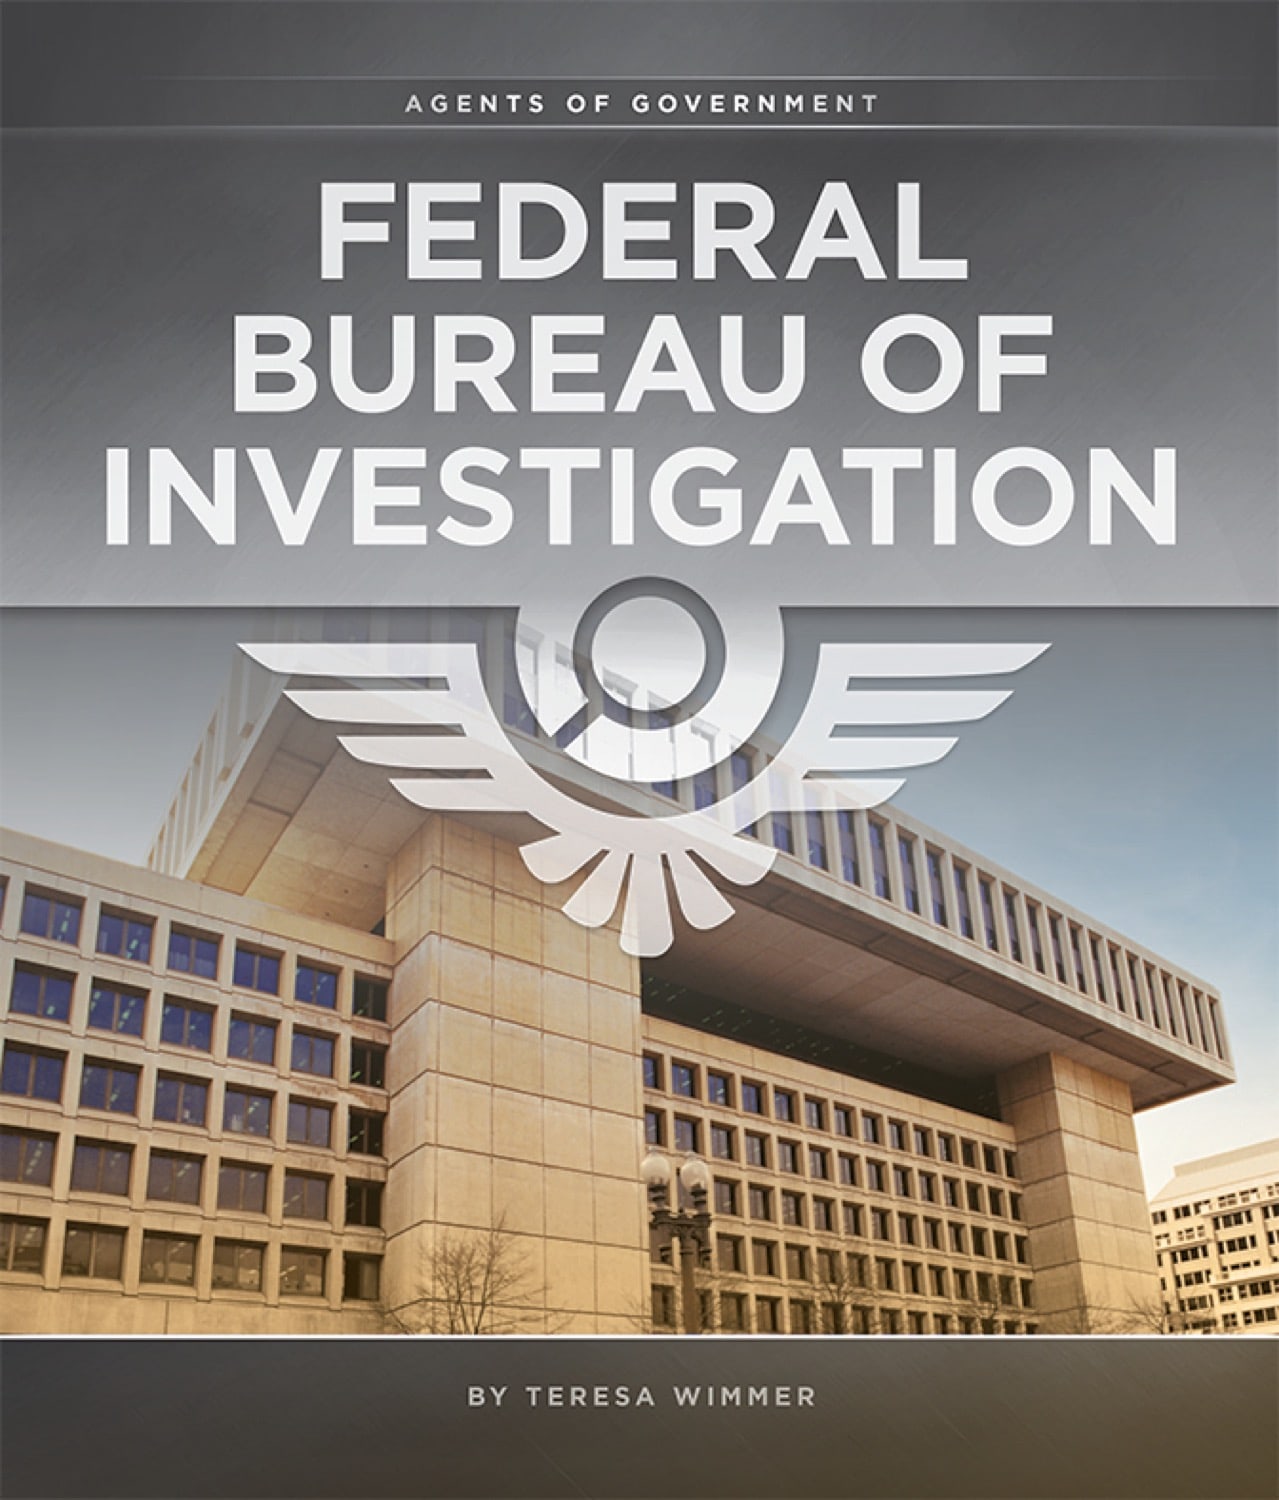 Regierungsvertreter: Federal Bureau of Investigation